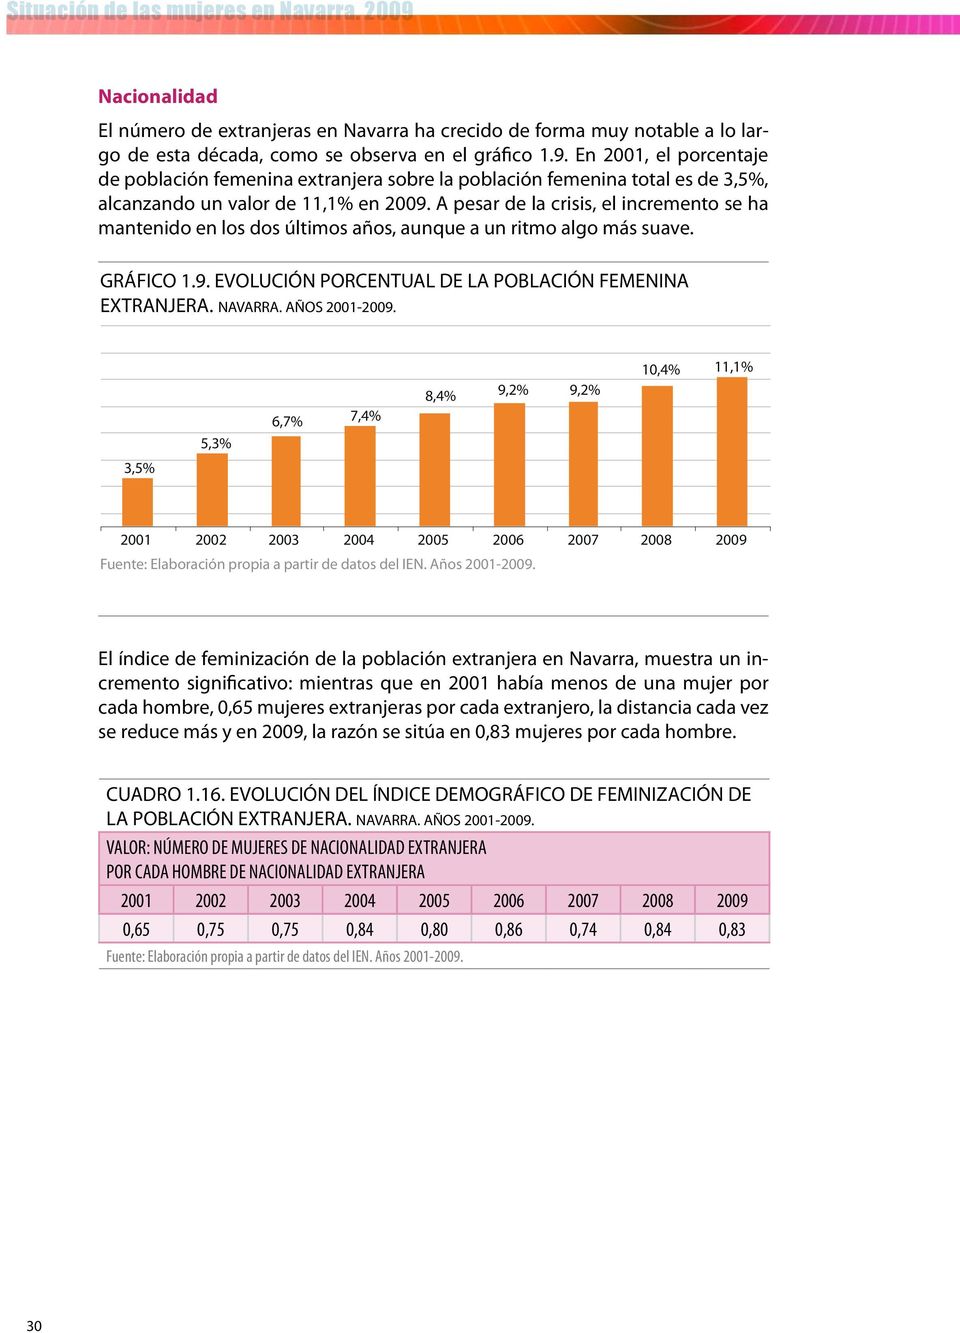 El índice de feminización de la población extranjera en Navarra, muestra un incremento significativo: mientras que en 2001 había menos de una mujer por cada hombre, 0,65 mujeres extranjeras por cada